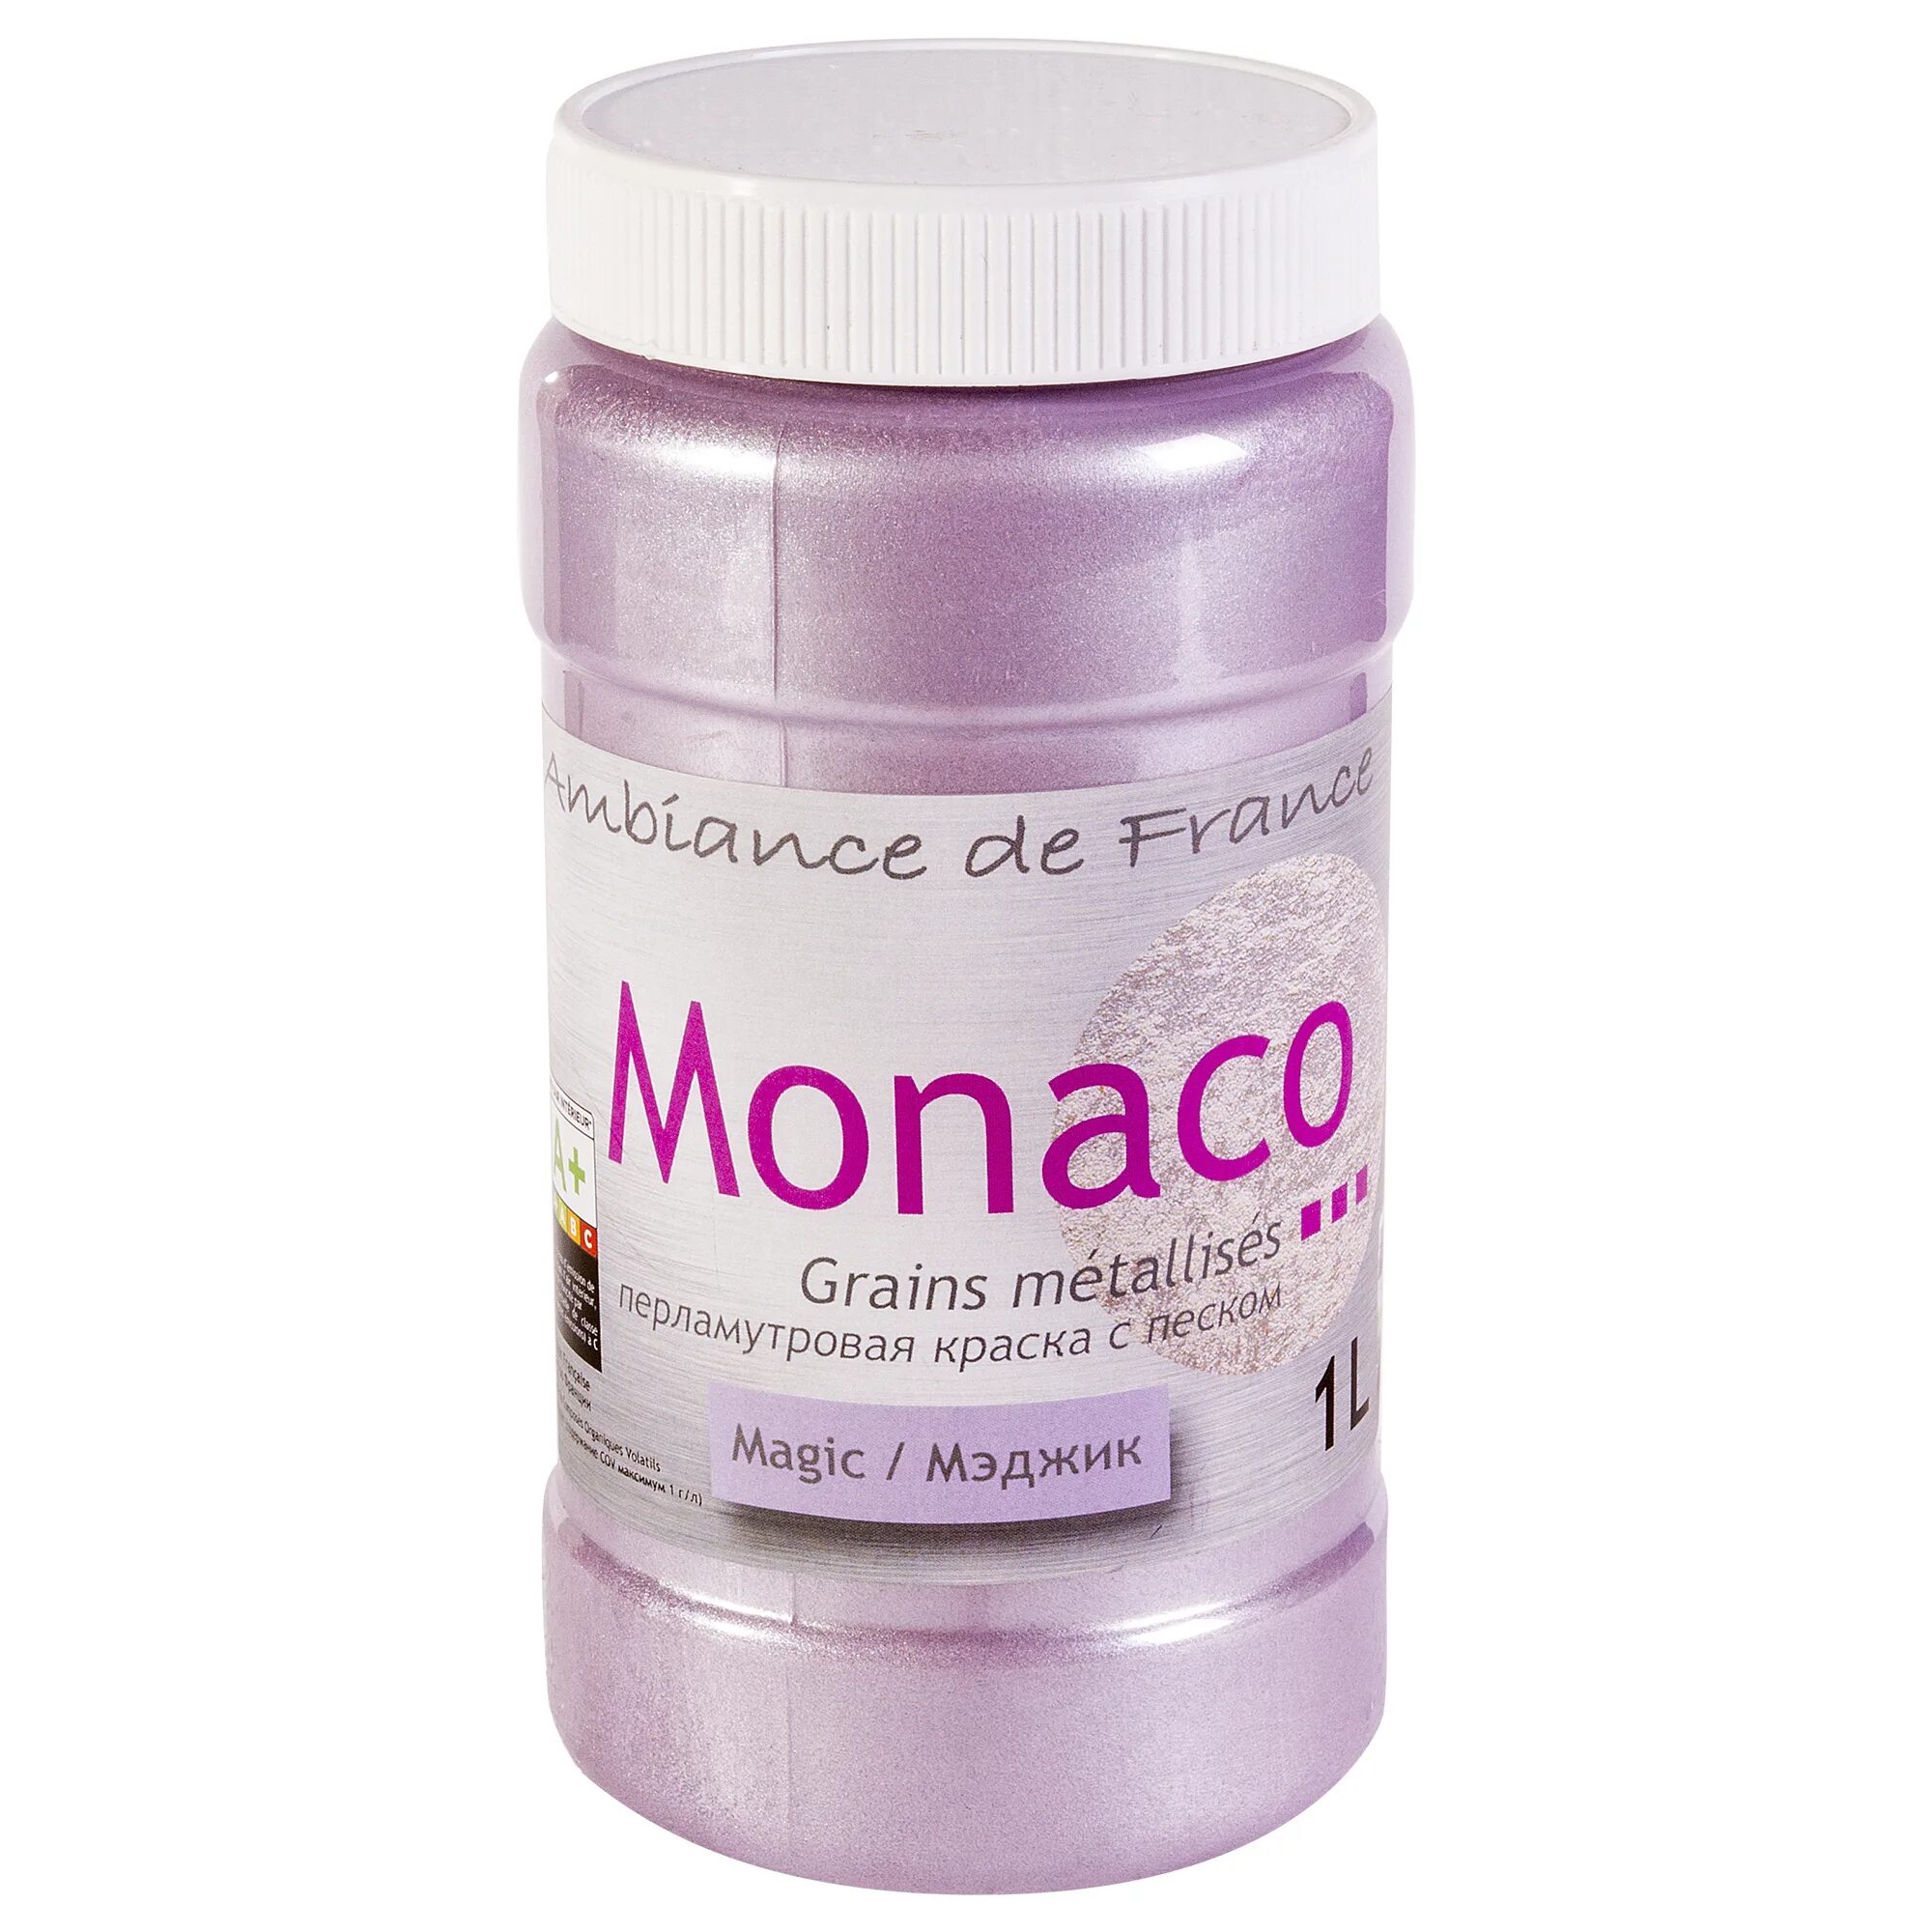 Краска перламутровый отзывы. Краска с песком для стен Monaco. Монако краска перламутровая с песком. Перламутровая краска с песком для стен Monaco. Краска Монако с песком.